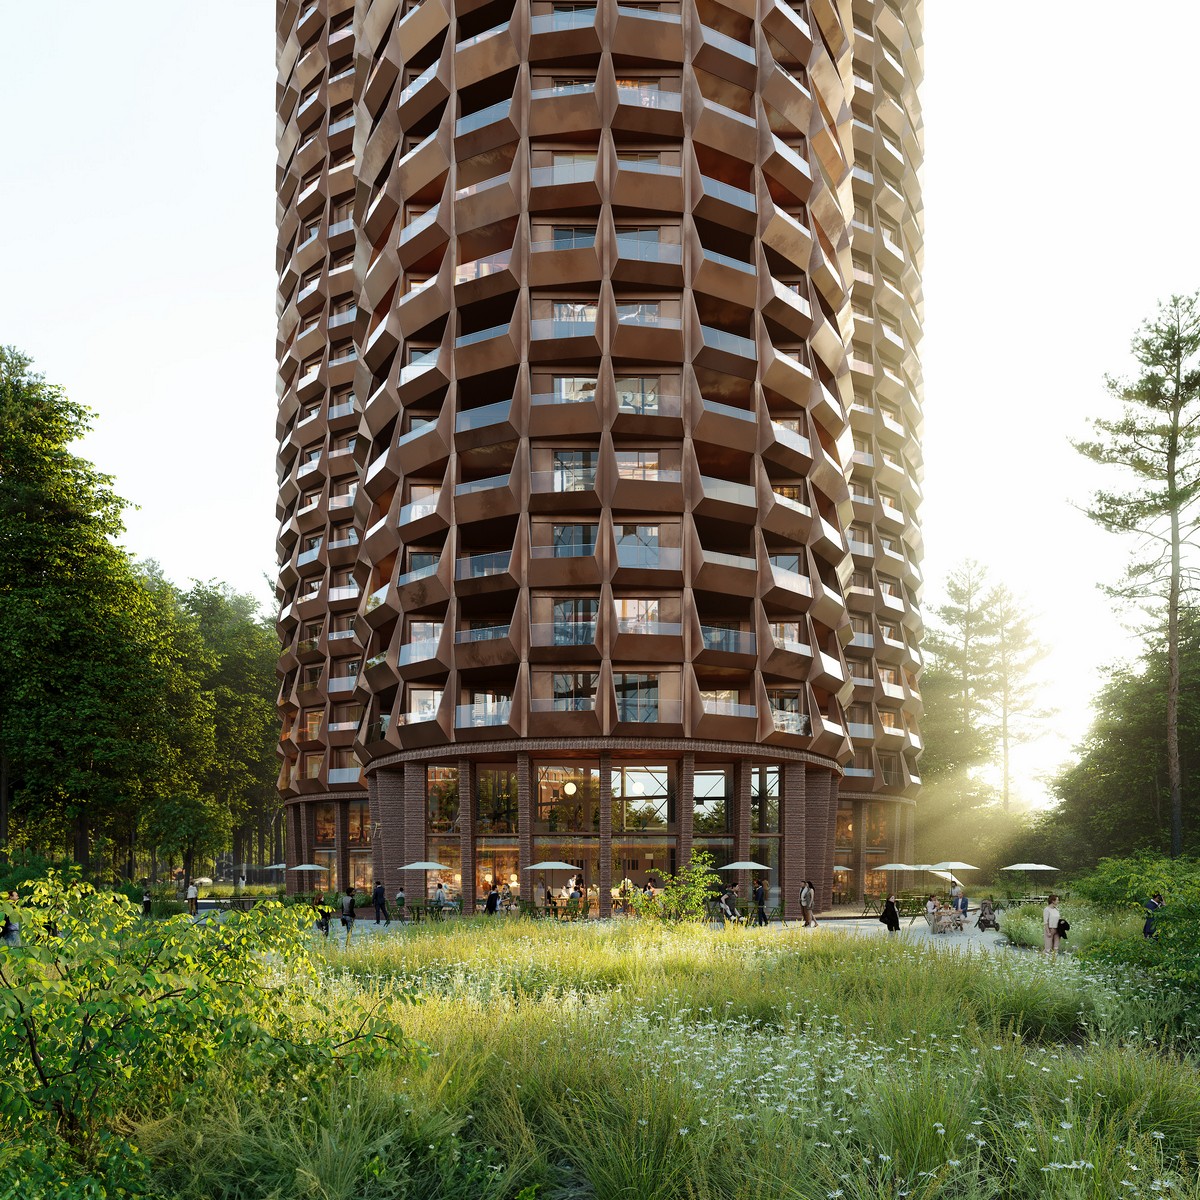 Stadsljus Stockholm residential tower building